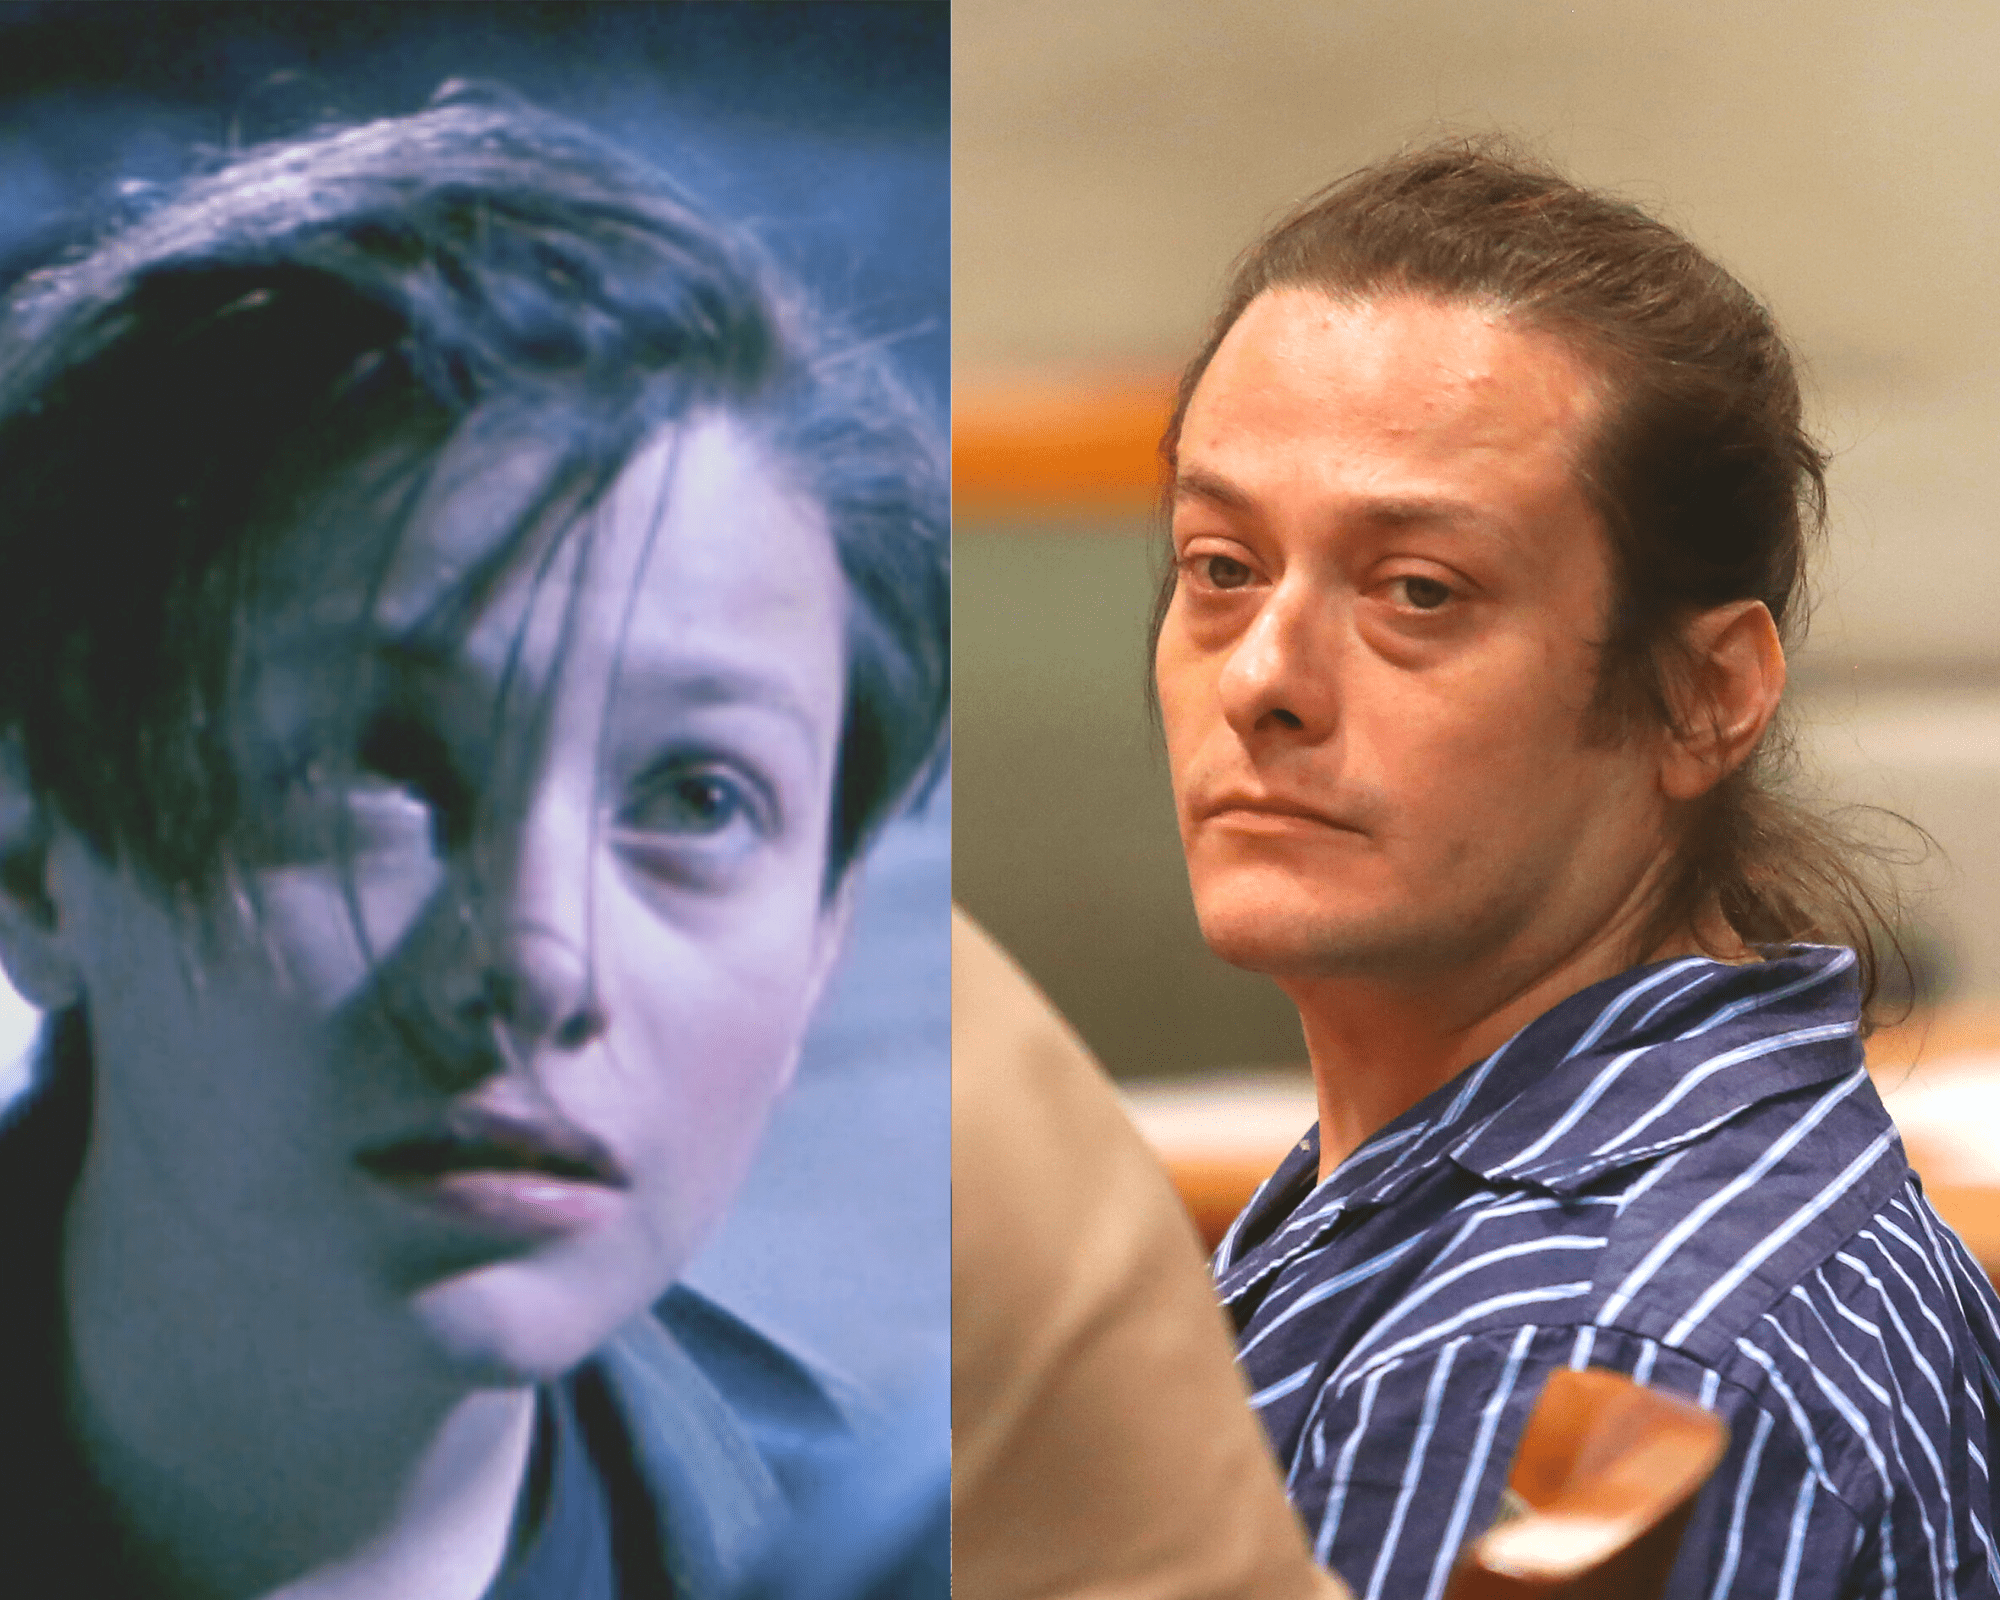 Edward Furlong (als John Connor) in "Terminator 2, Juli 1991 | Edward Furlong in einem Gericht in Los Angeles am 1. Juli 2013 | Quelle: Getty Images